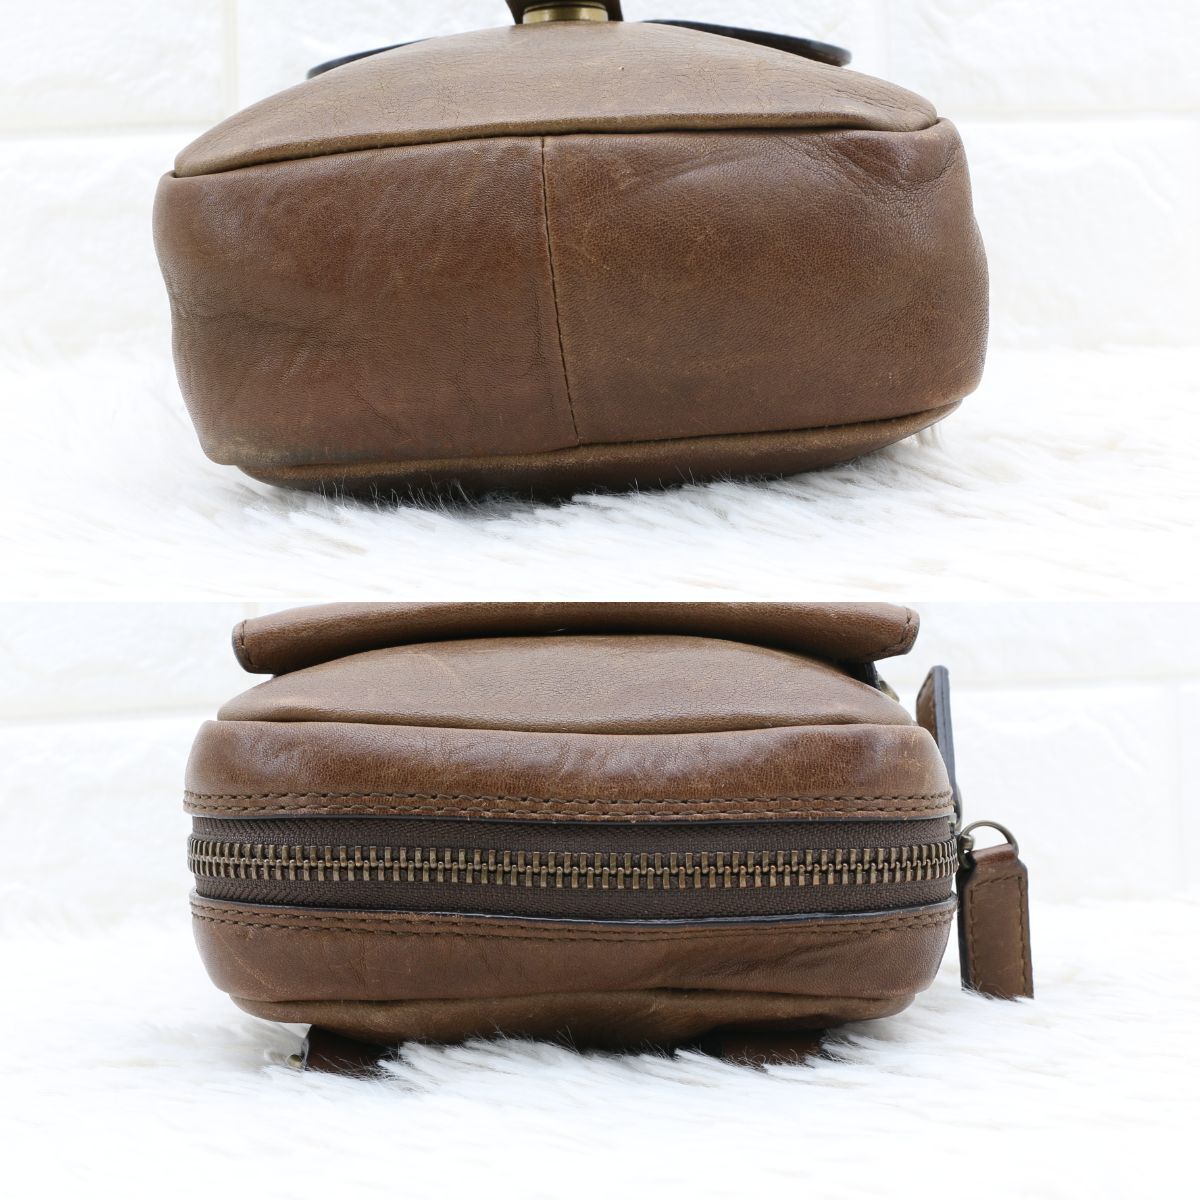 [ super rare ] earth shop bag ga jet big pocket Gadget original leather waist bag belt pouch belt bag men's Brown olive 